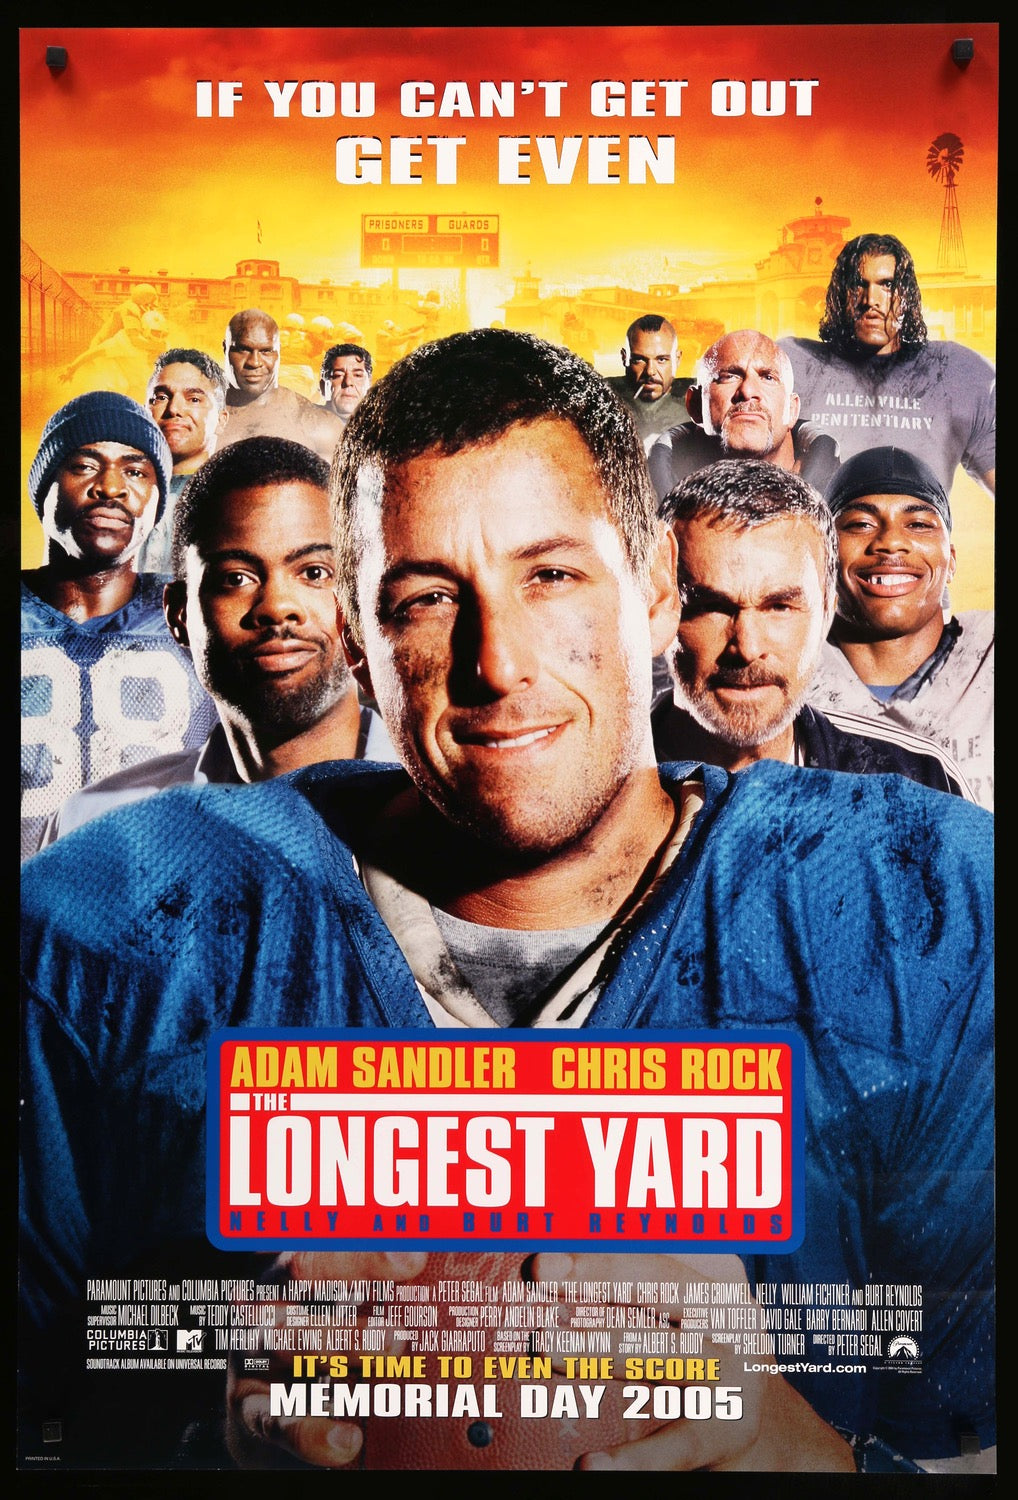 Longest Yard (2005) original movie poster for sale at Original Film Art